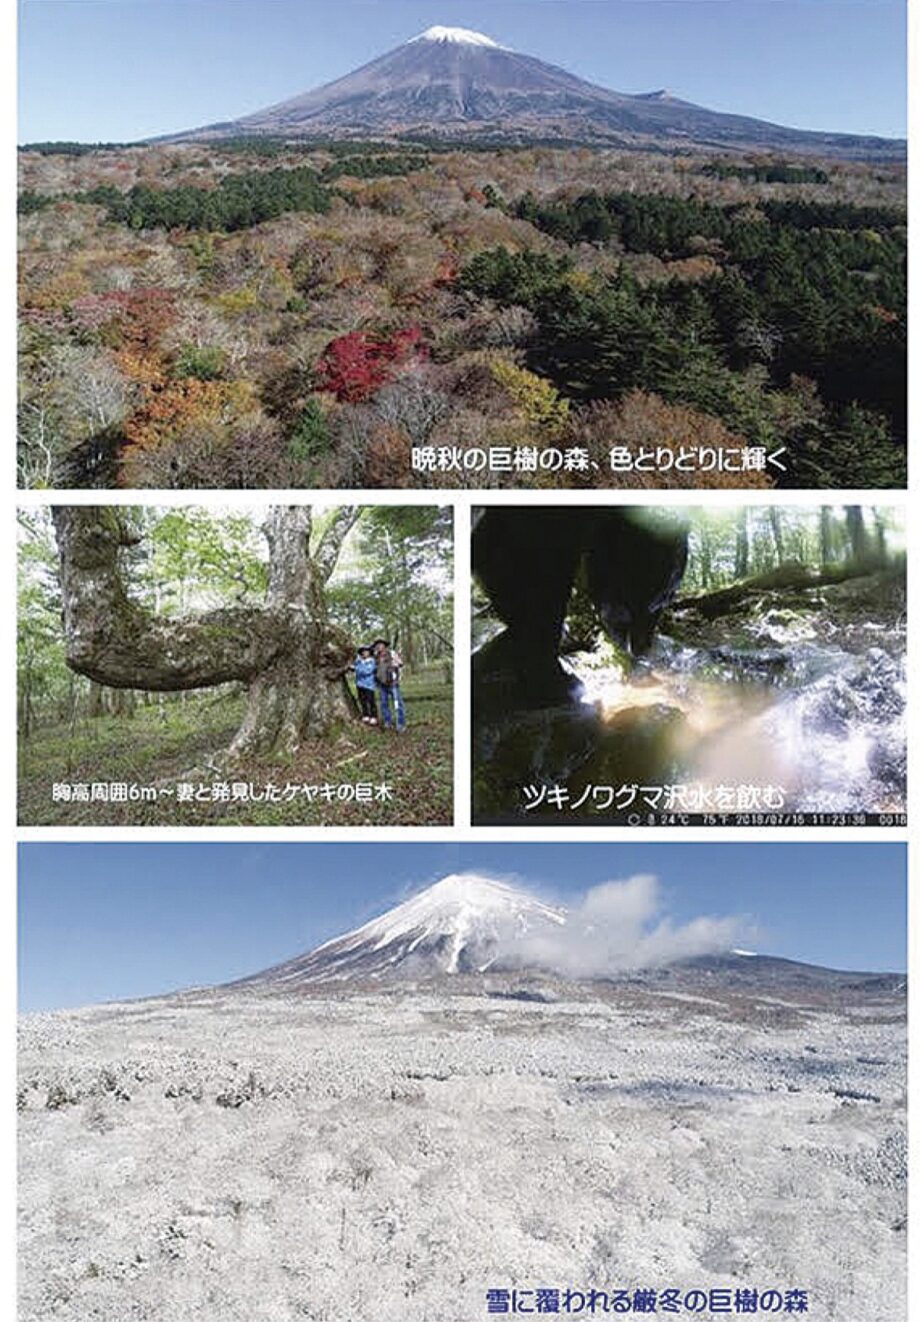 写真展「富士山からの贈り物・巨樹の森の四季」@丹沢美術館